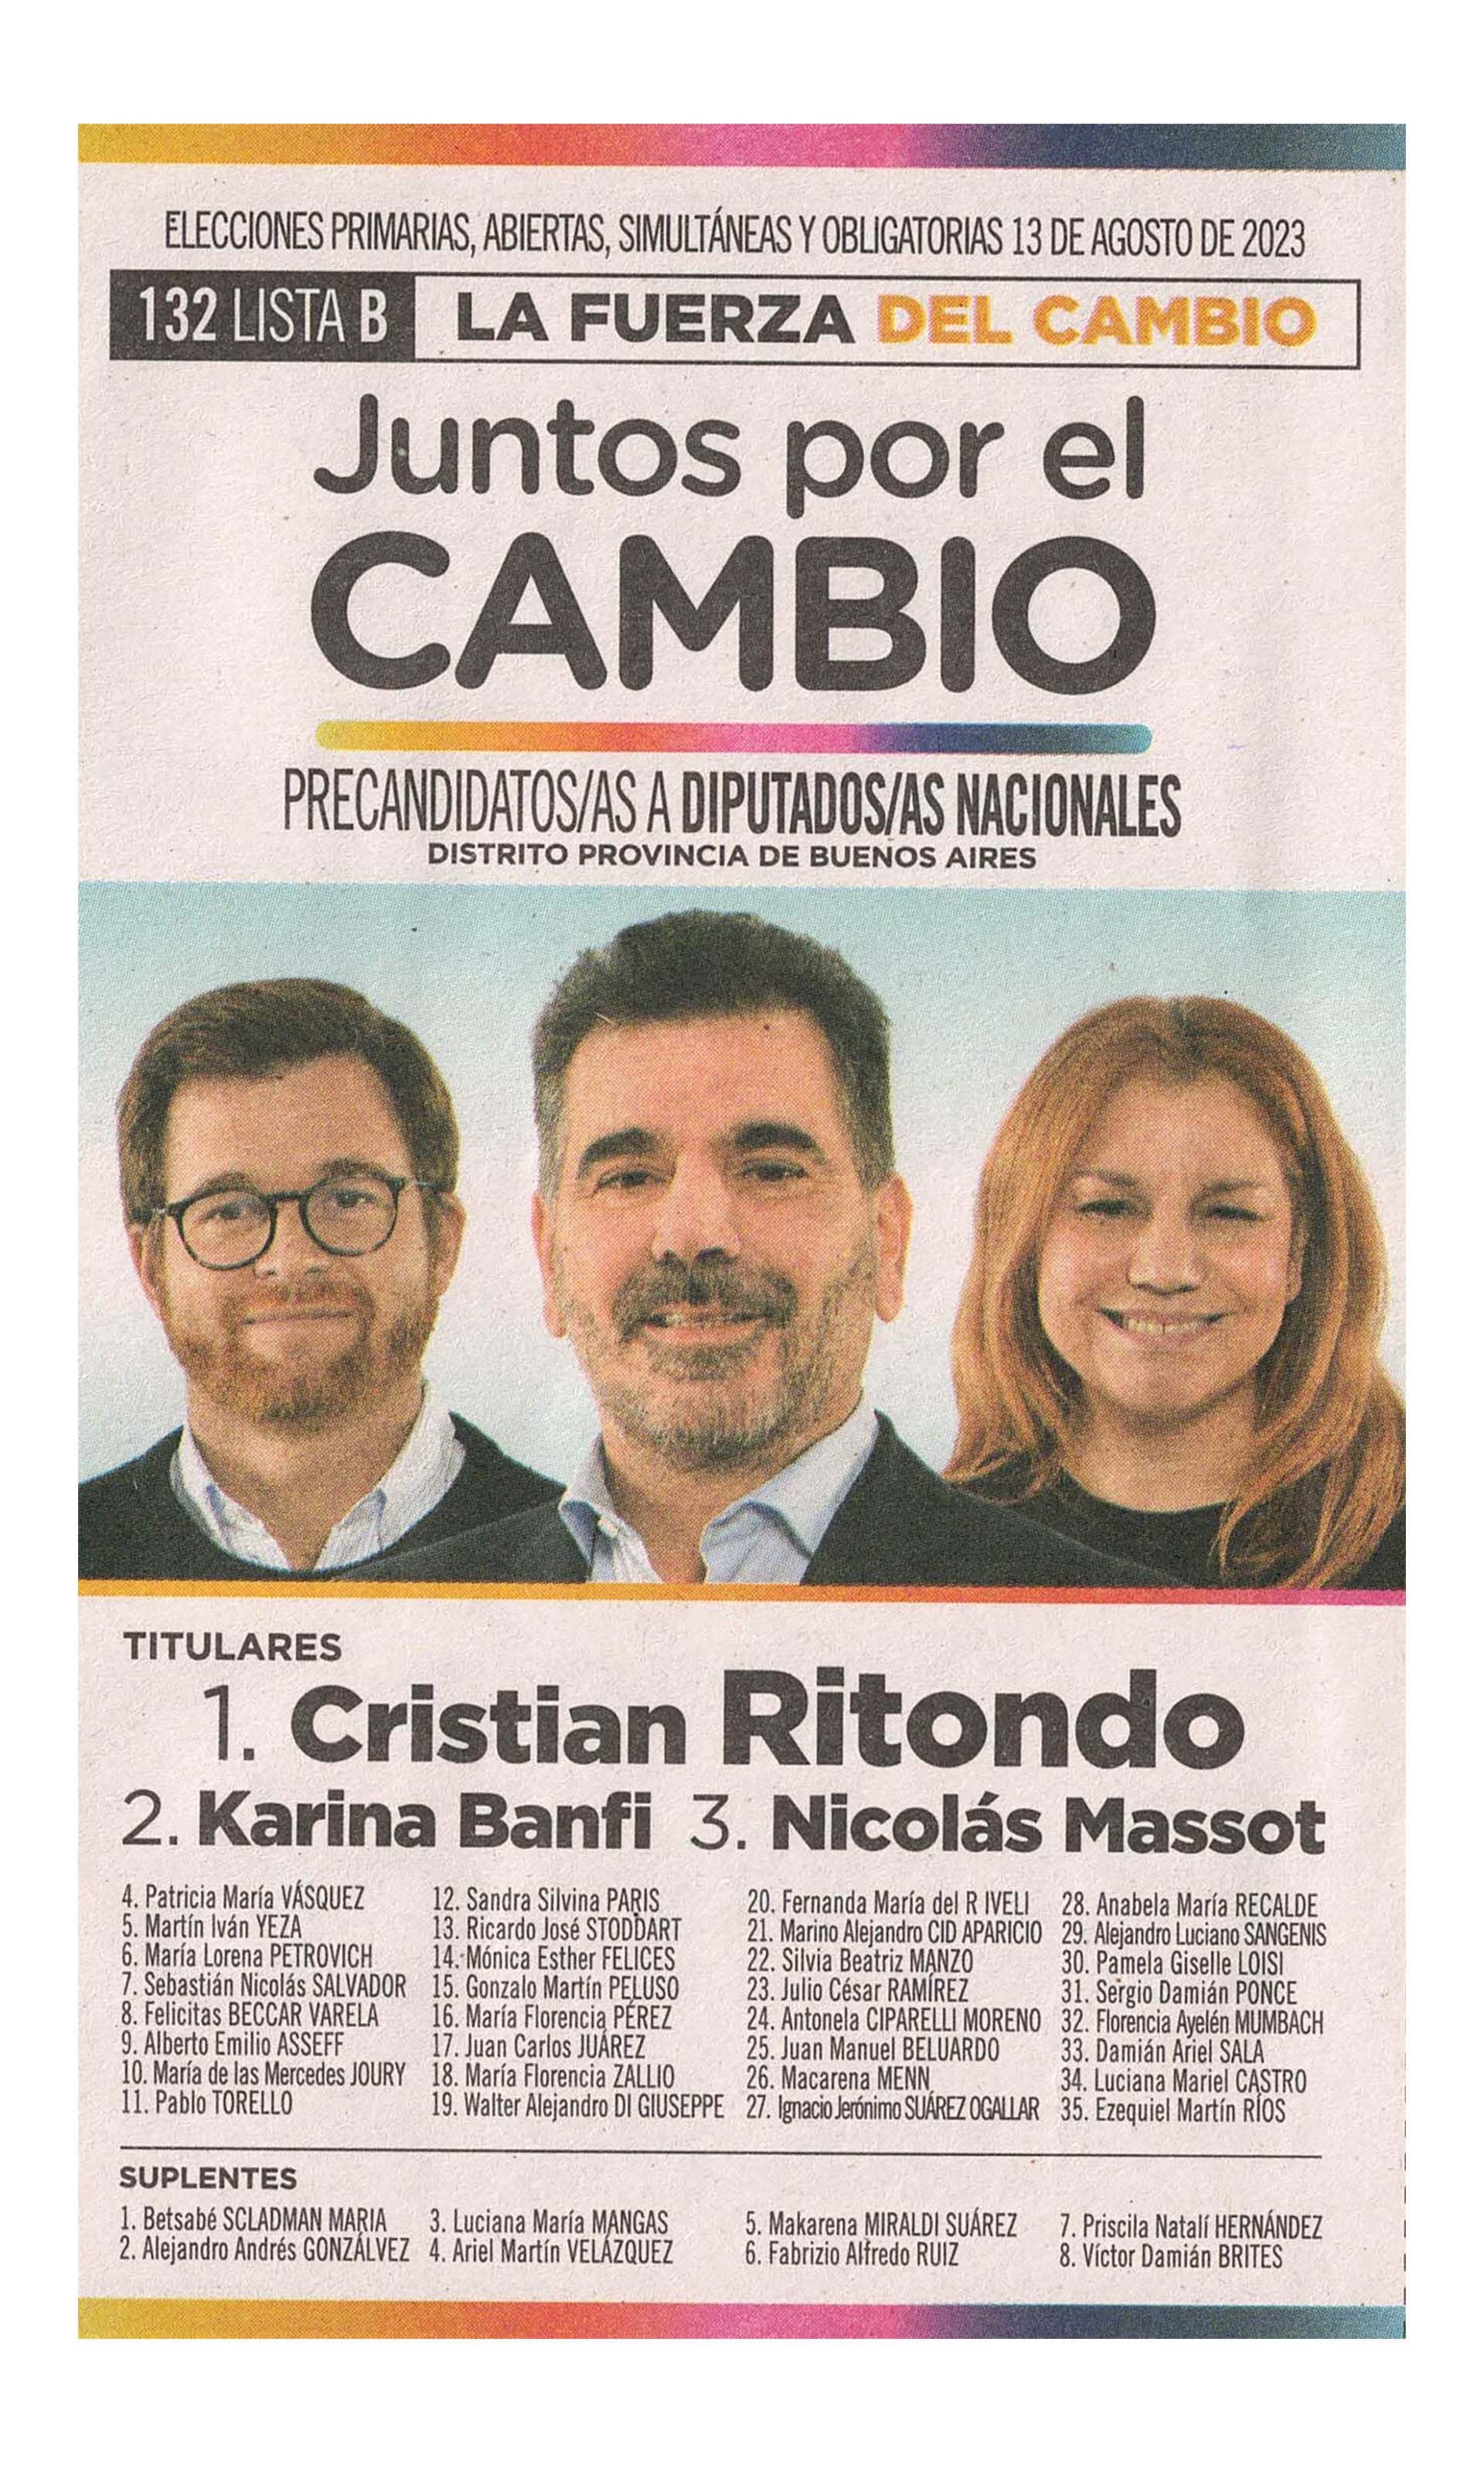 La boleta oficial de Cristian Ritondo de precandidatos a diputados nacionales en Buenos Aires